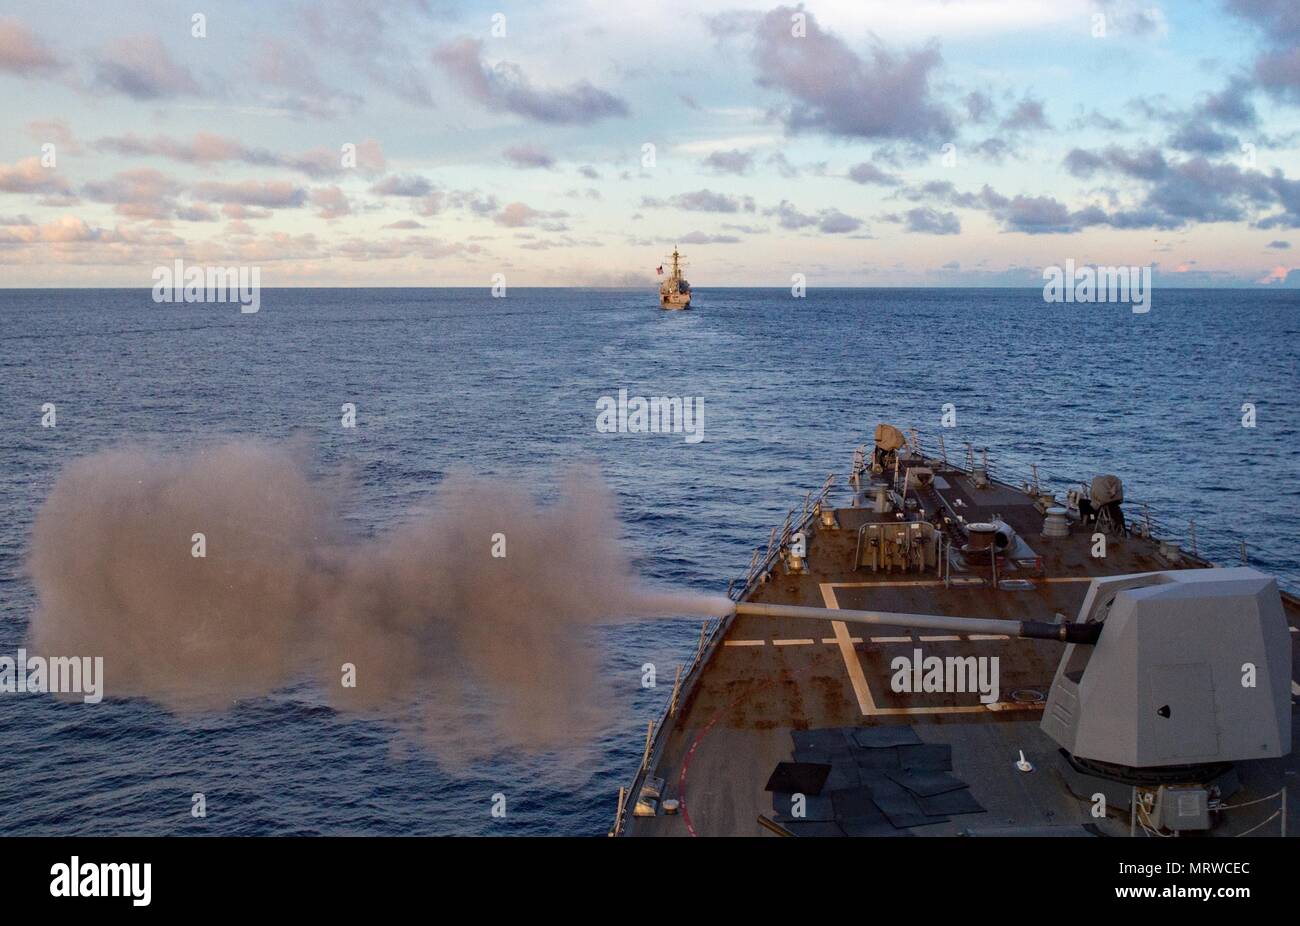 170529-N-HI376-021 SUD PACIFICO (29 giugno 2017) La distribuita Arleigh Burke-class guidato-missile destroyer USS McCampbell (DDG 85) incendi i suoi 5 pollici pistola durante una coordinata live-fire gunnery esercizio. McCampbell è di pattuglia NEGLI STATI UNITI 7 flotta area di operazioni a sostegno della sicurezza e della stabilità in Indo-Asia-regione del Pacifico. (U.S. Foto di Marina di Massa lo specialista di comunicazione 2a classe Jeremy Graham/rilasciato) Foto Stock